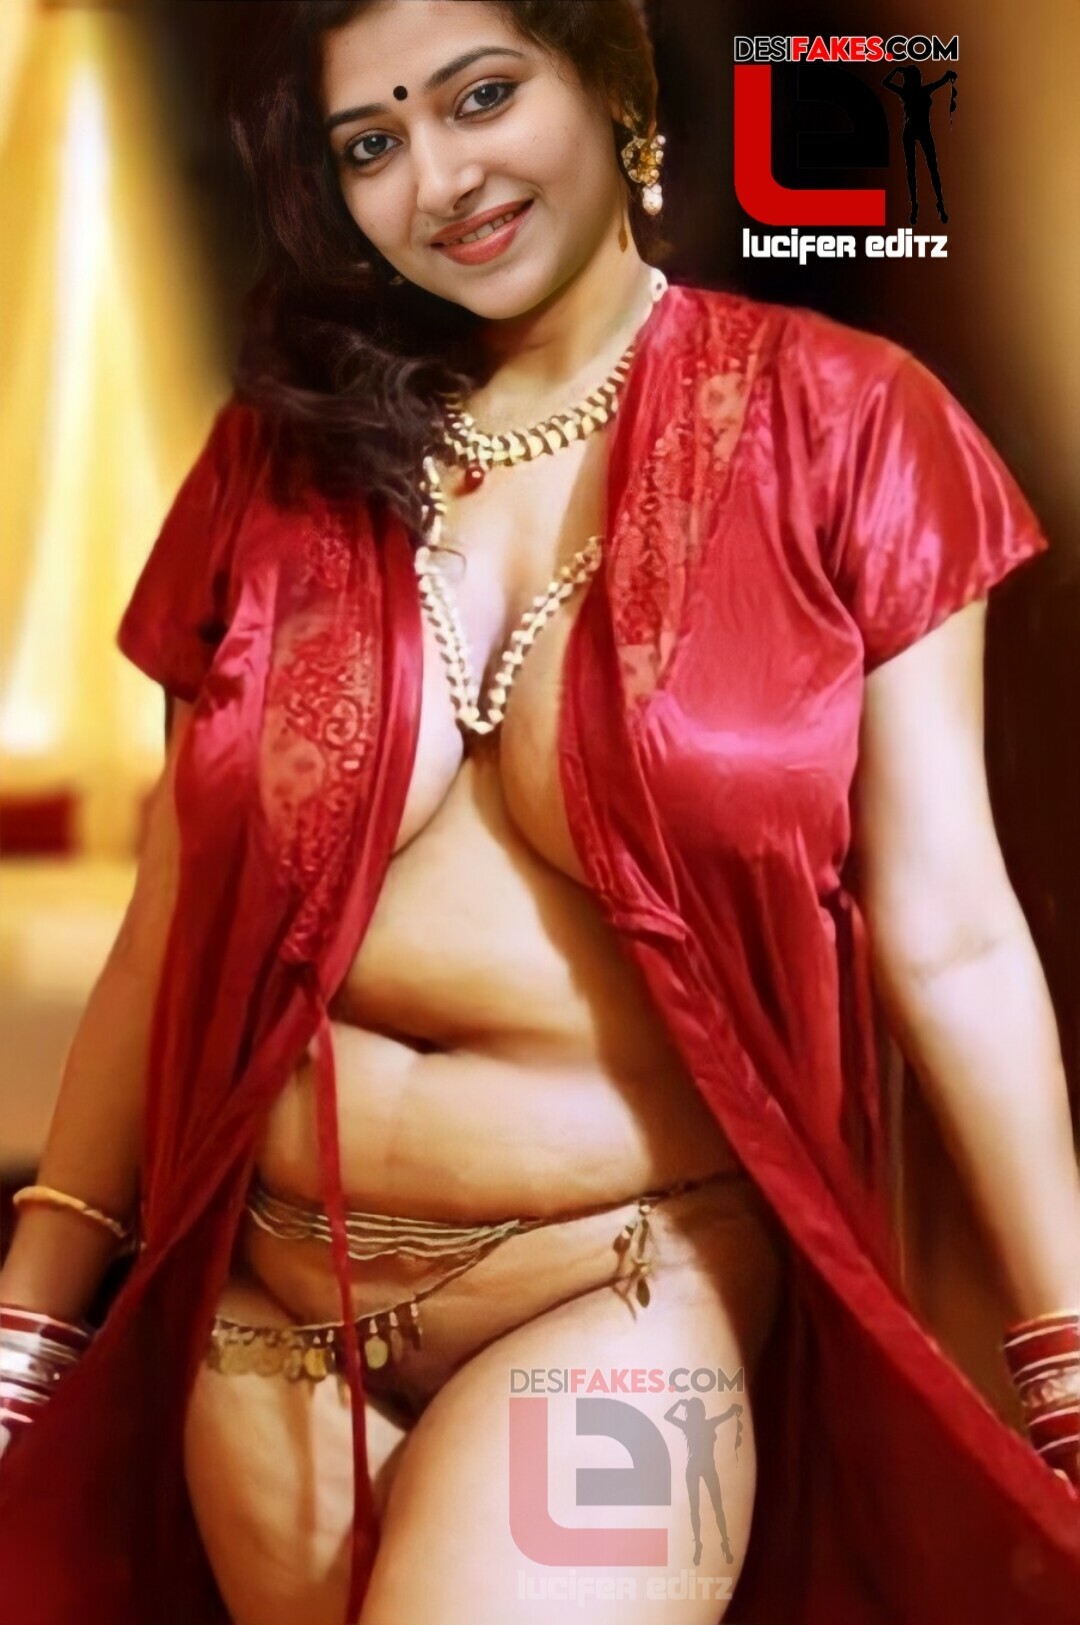 Sithara Hot Sex Video - Hot Actress Anu Sithara dildo Nude Sex Photos HQ â€“ Desi Fakes Edit.Work